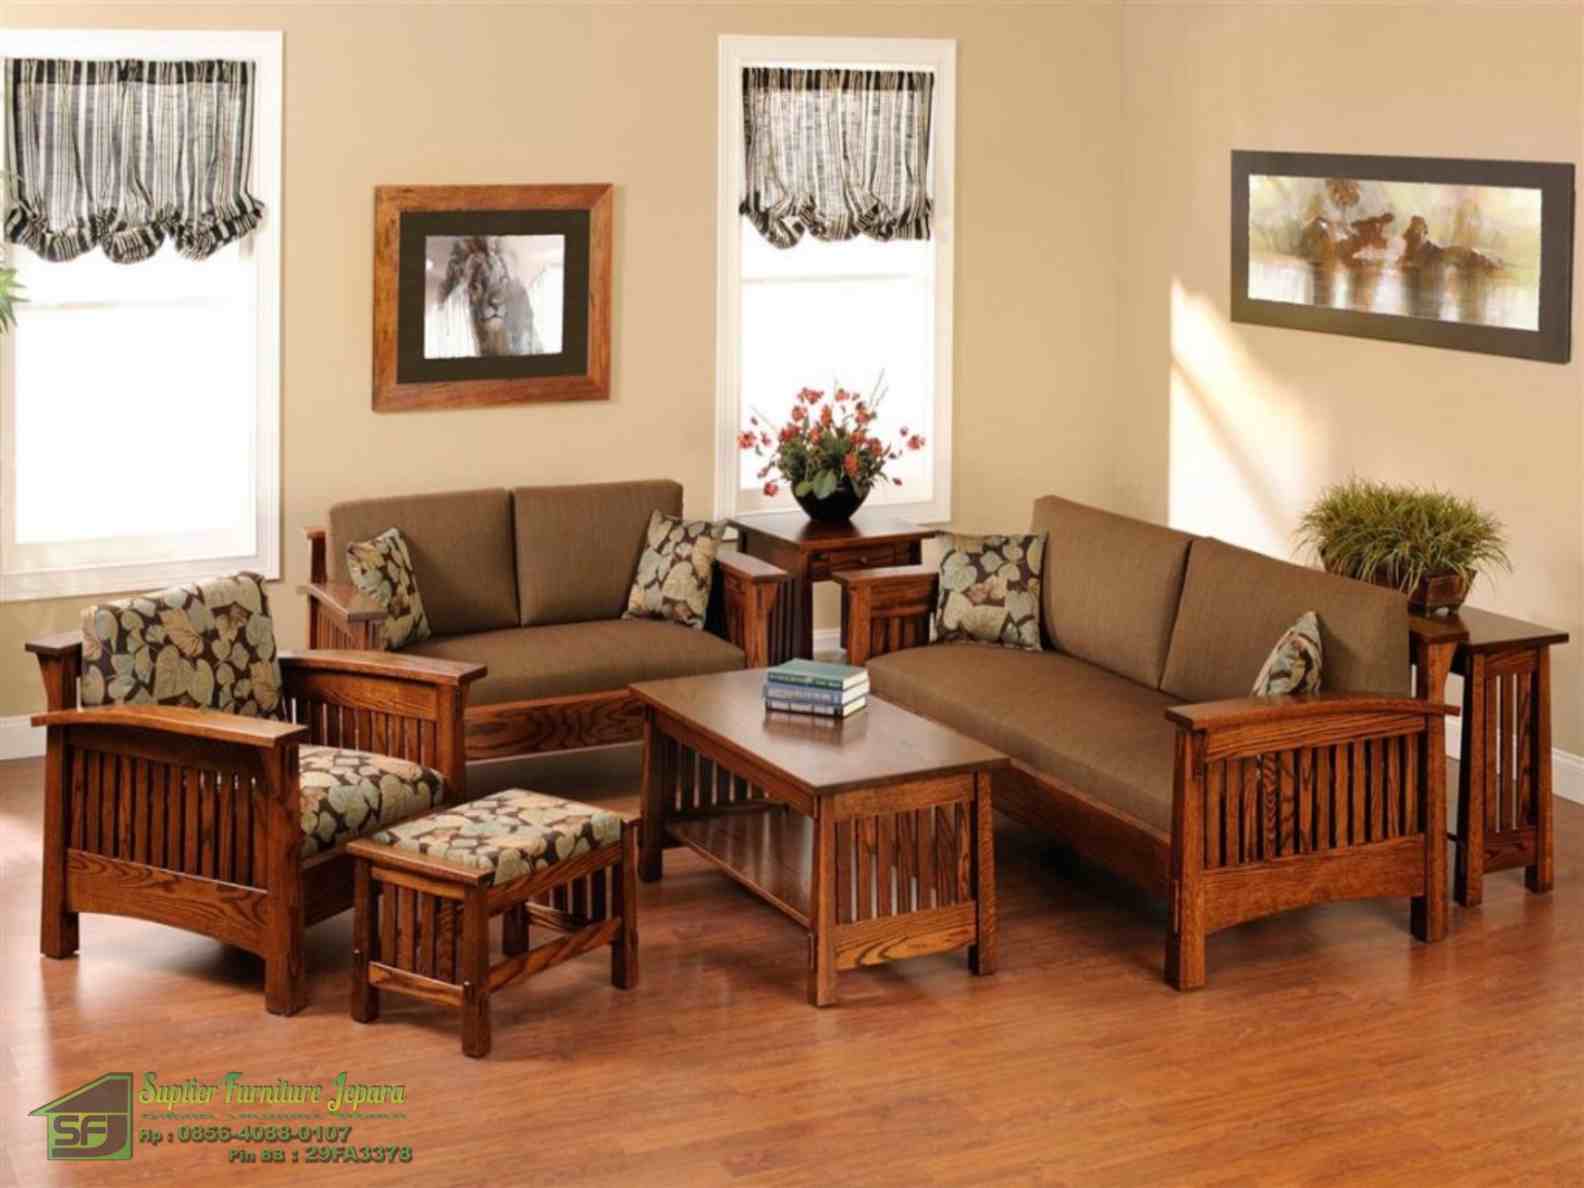 Desain Interior Ruang Tamu Minimalis Tanpa Sofa Interior Rumah 1655